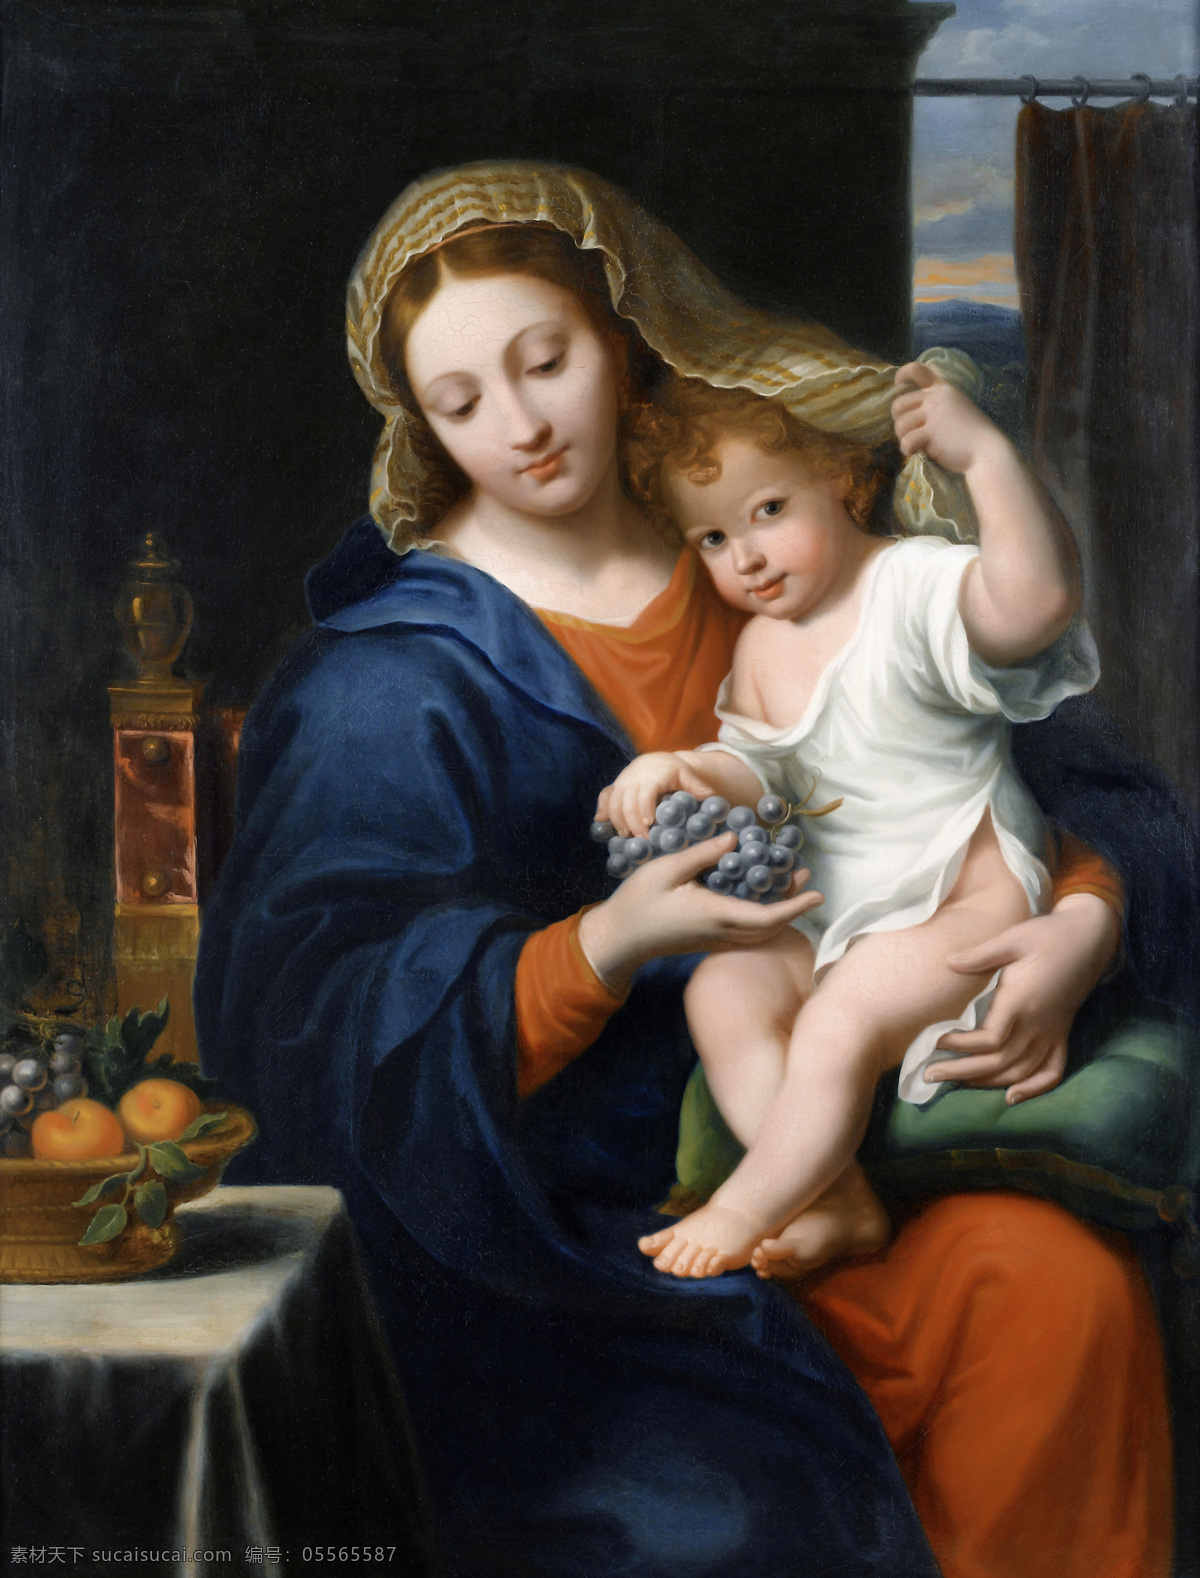 圣母抱耶稣 圣母抱子 耶稣 玛利亚 天使 人物图库 生活人物